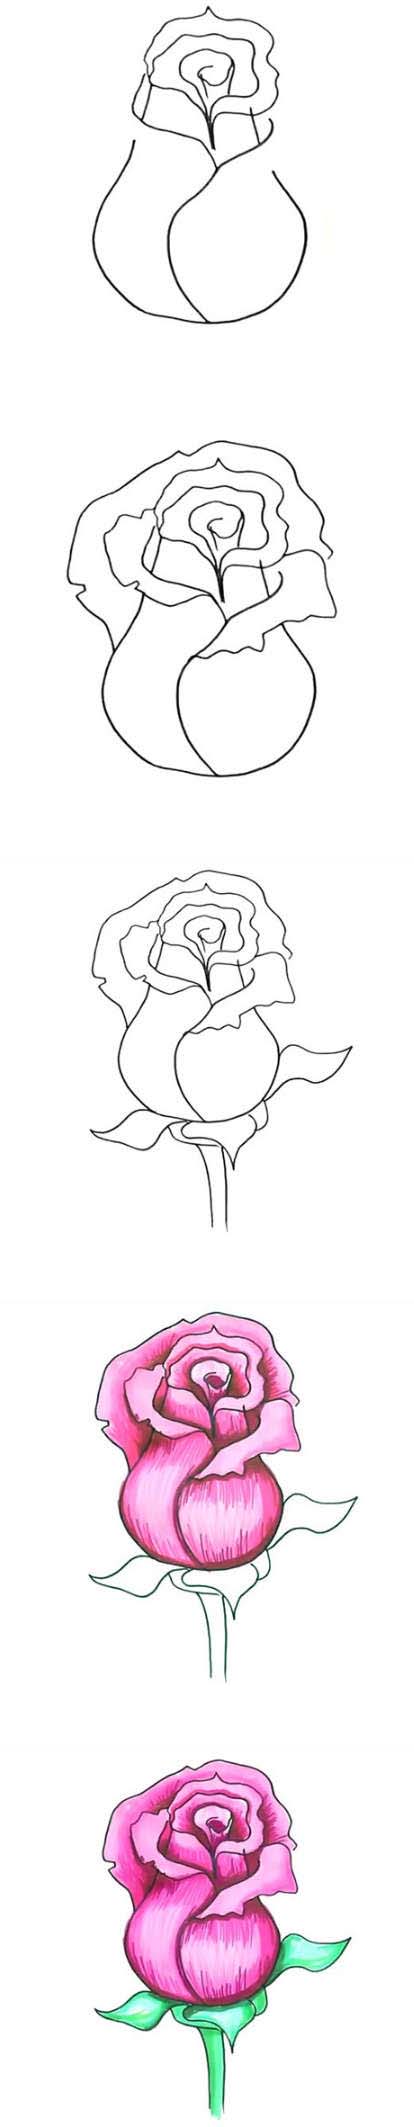 情人节母亲节大红色玫瑰花的简笔画画法步骤教程简单好看